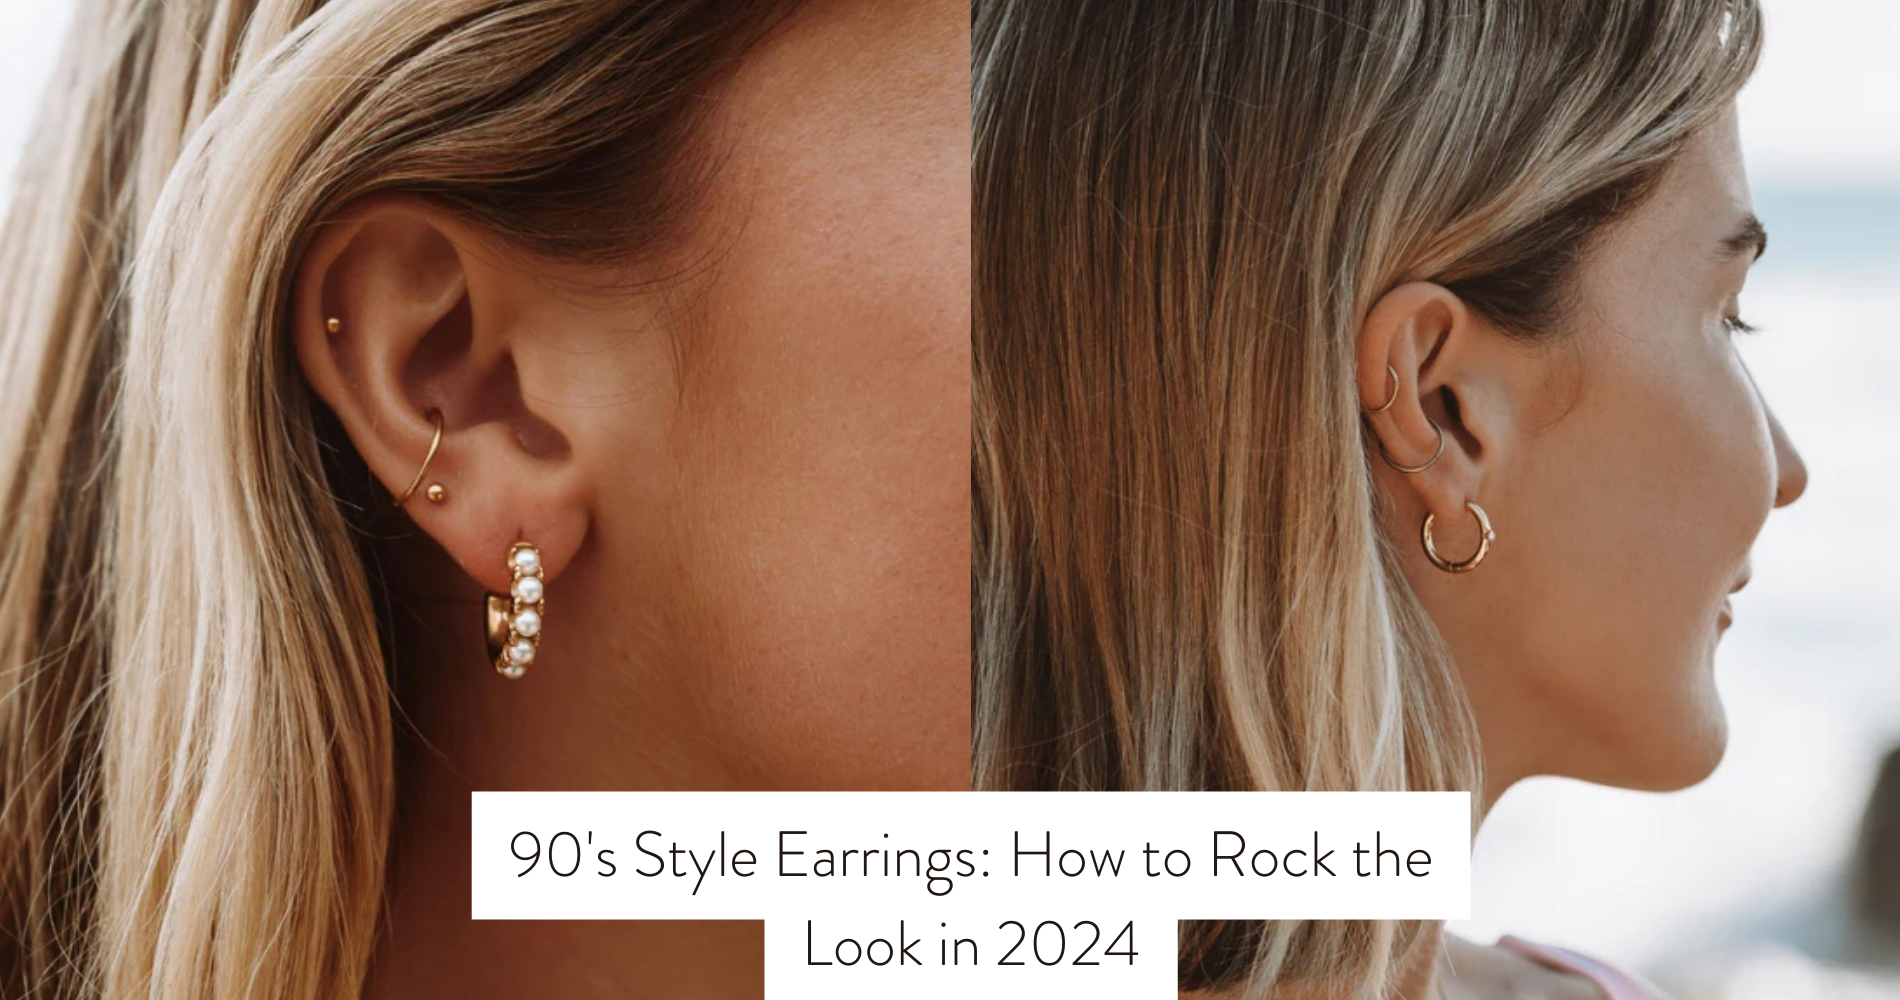 90's style earrings